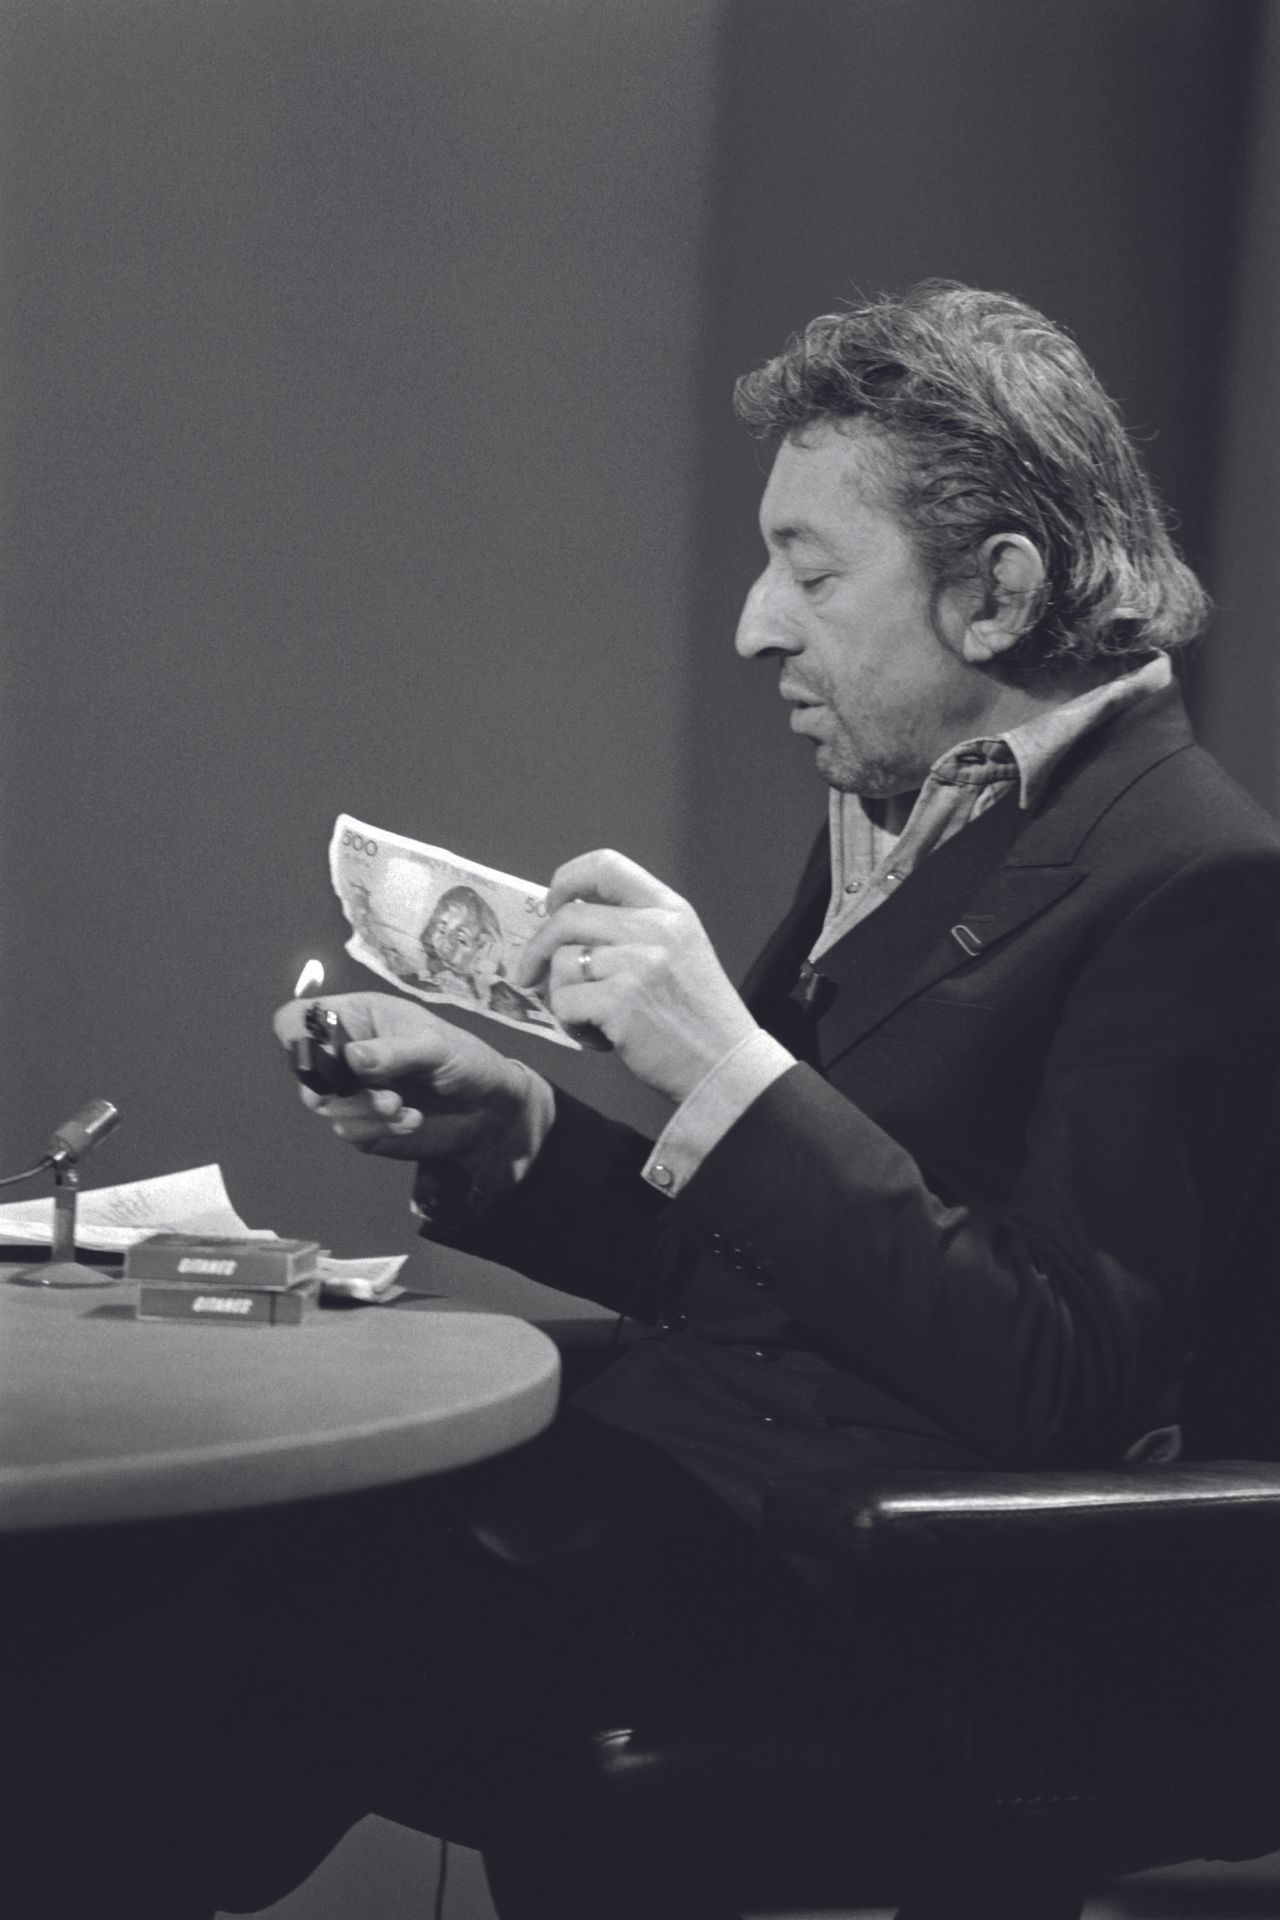 AFP - Philippe WOJAZER AFP - Philippe WOJAZER

Serge Gainsbourg quema un billete&hellip;